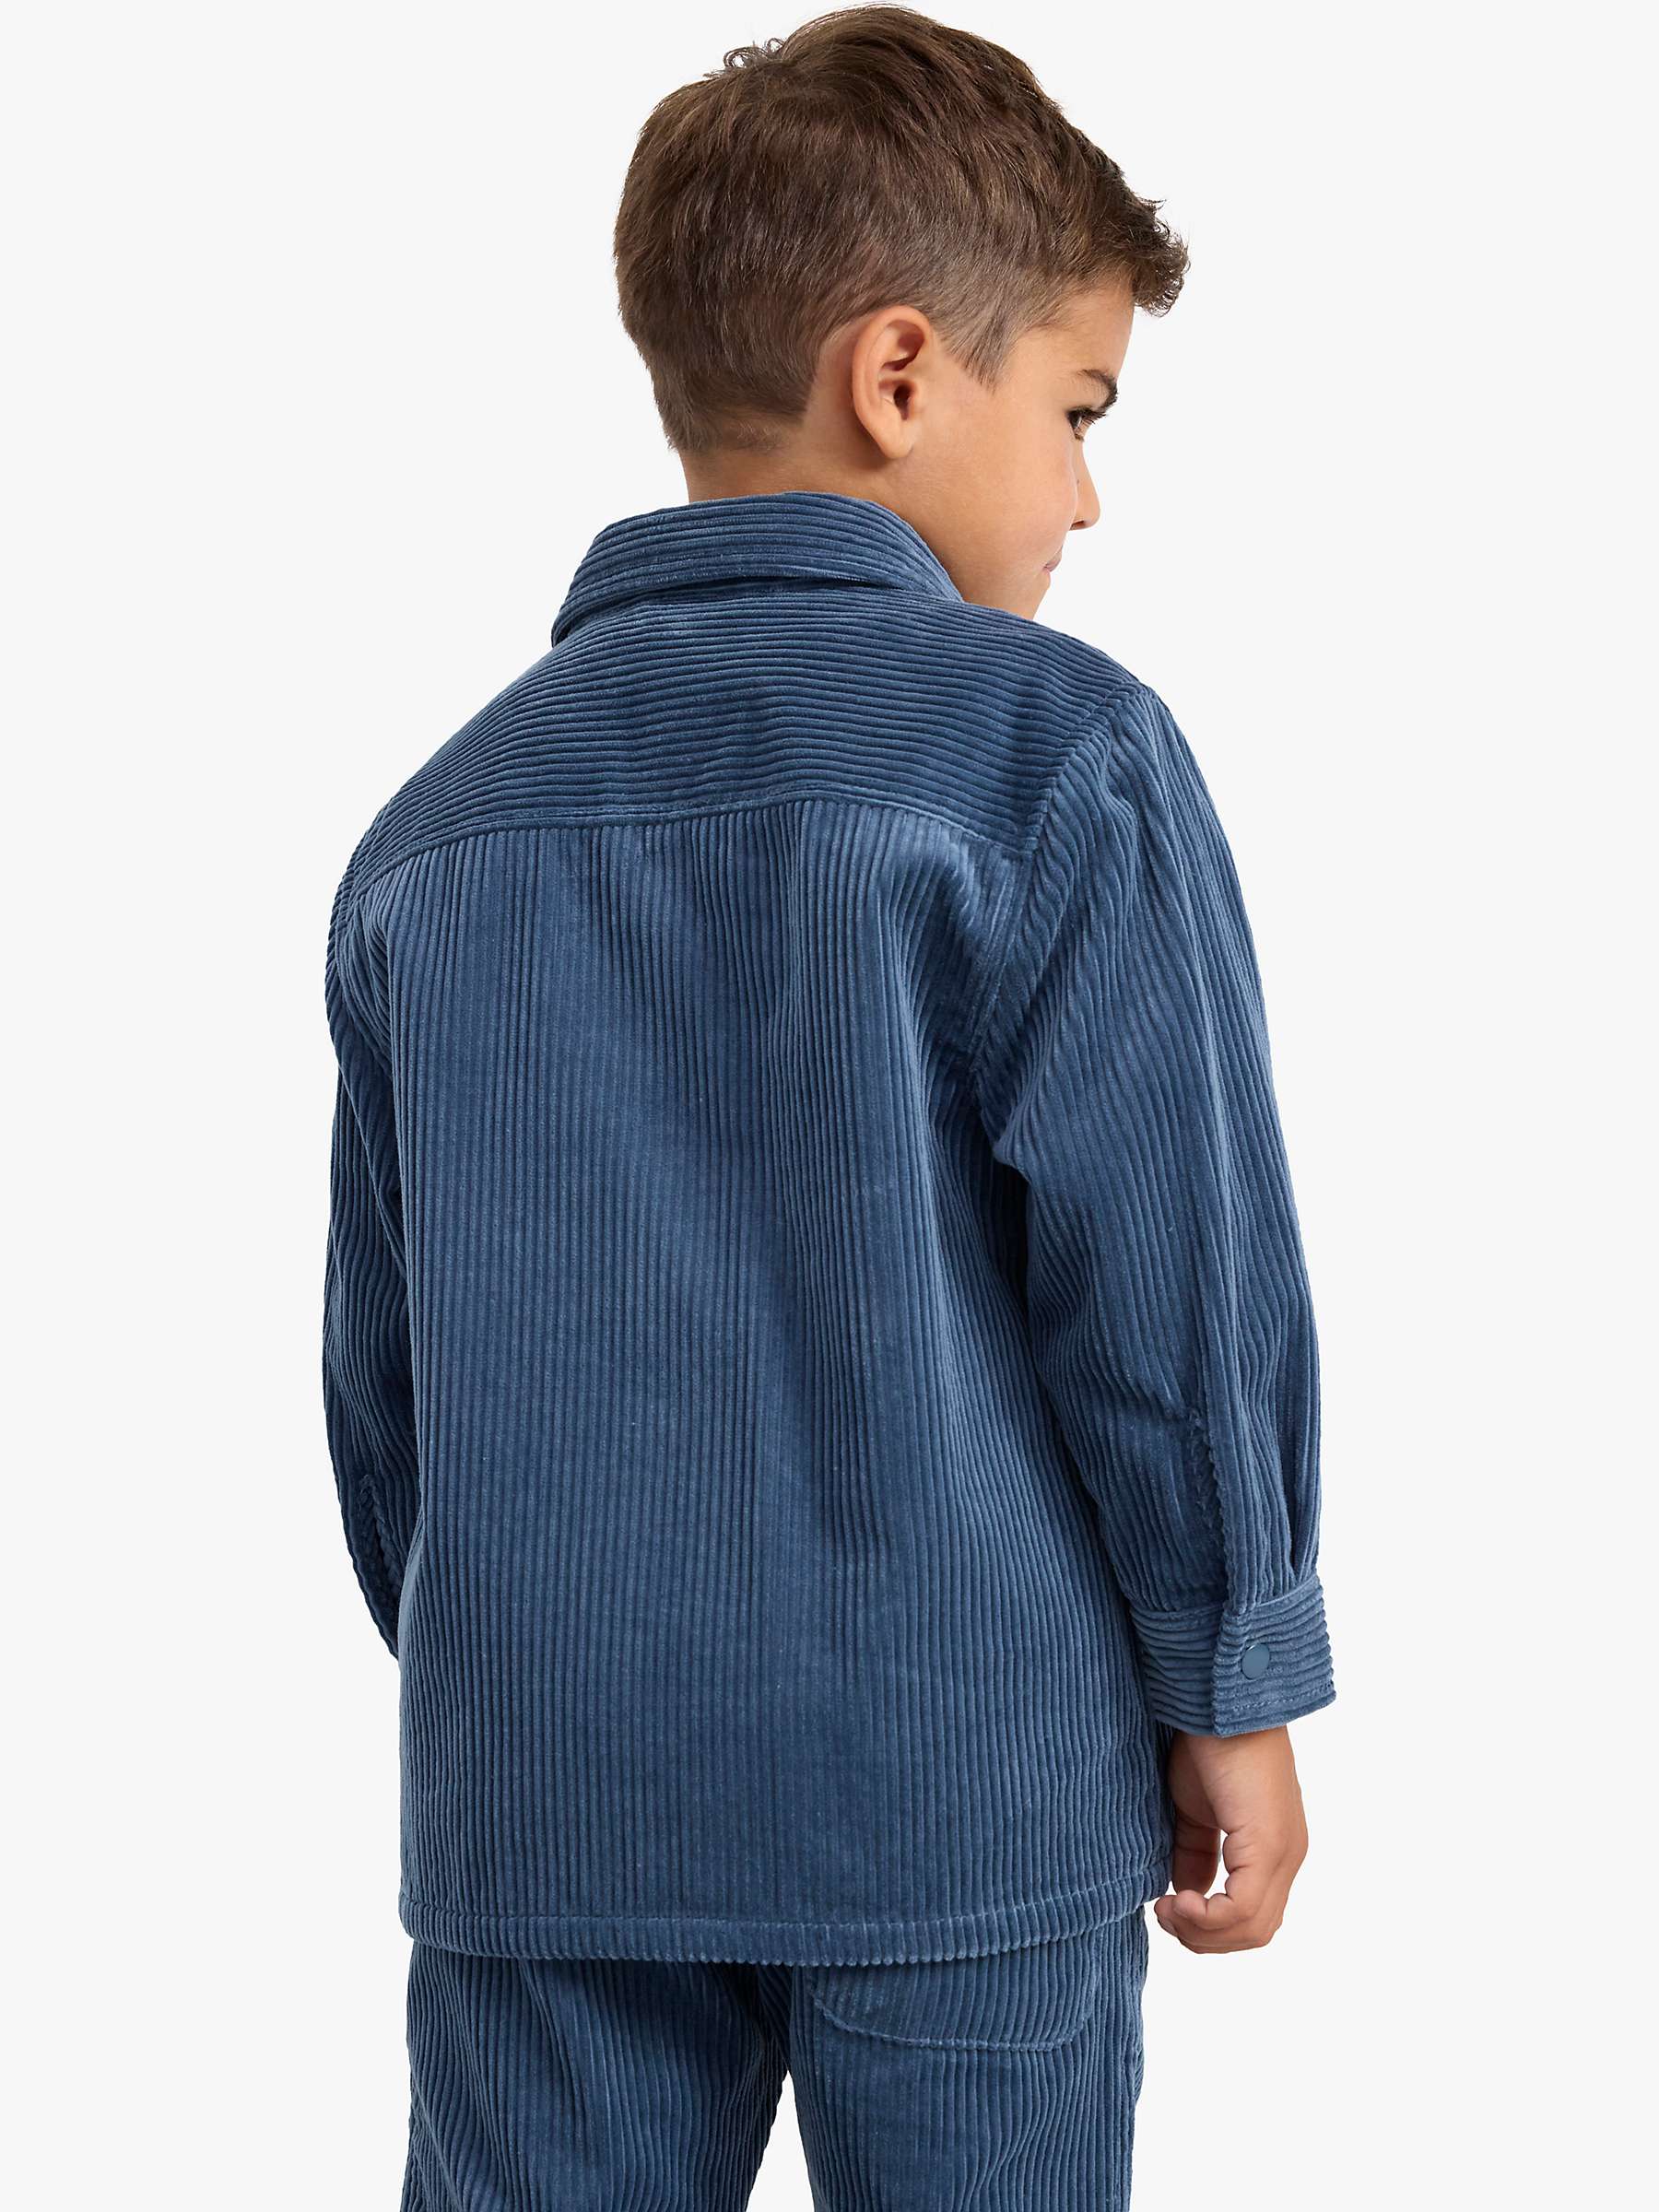 Buy Lindex Kids' Cord Shirt Jacket, Blue Online at johnlewis.com